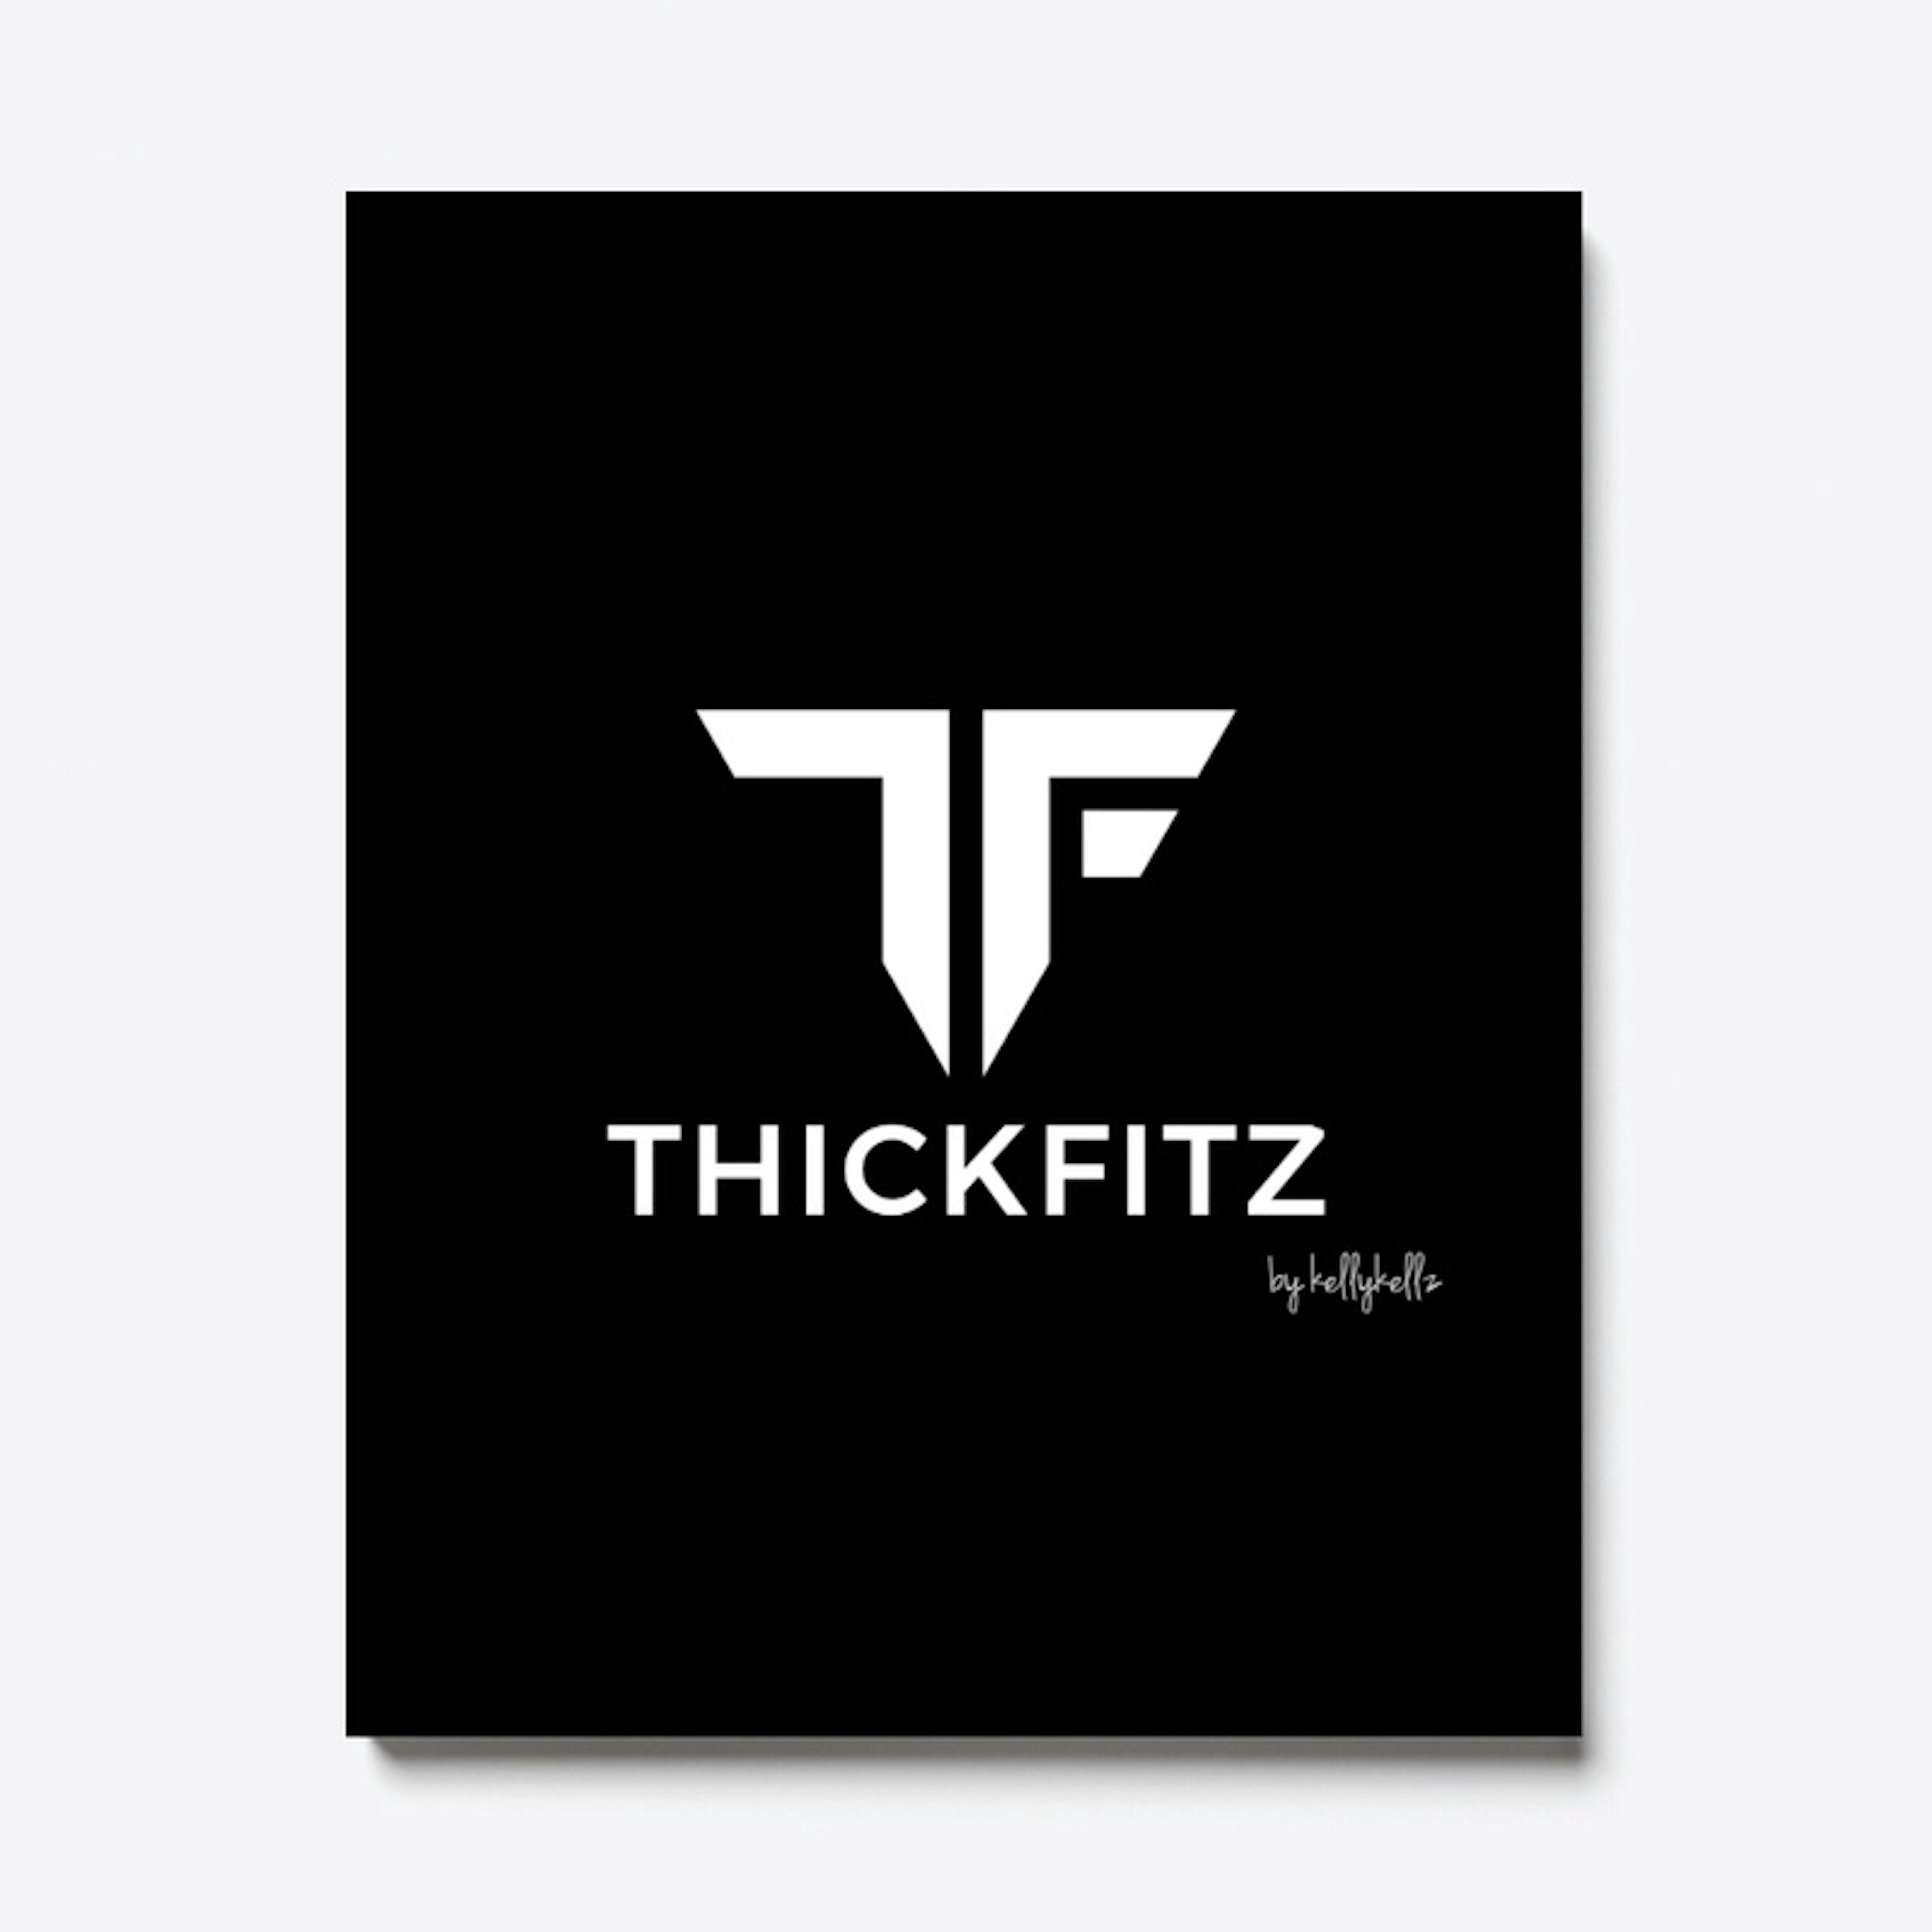 ThickFitz by Kelly Kellz